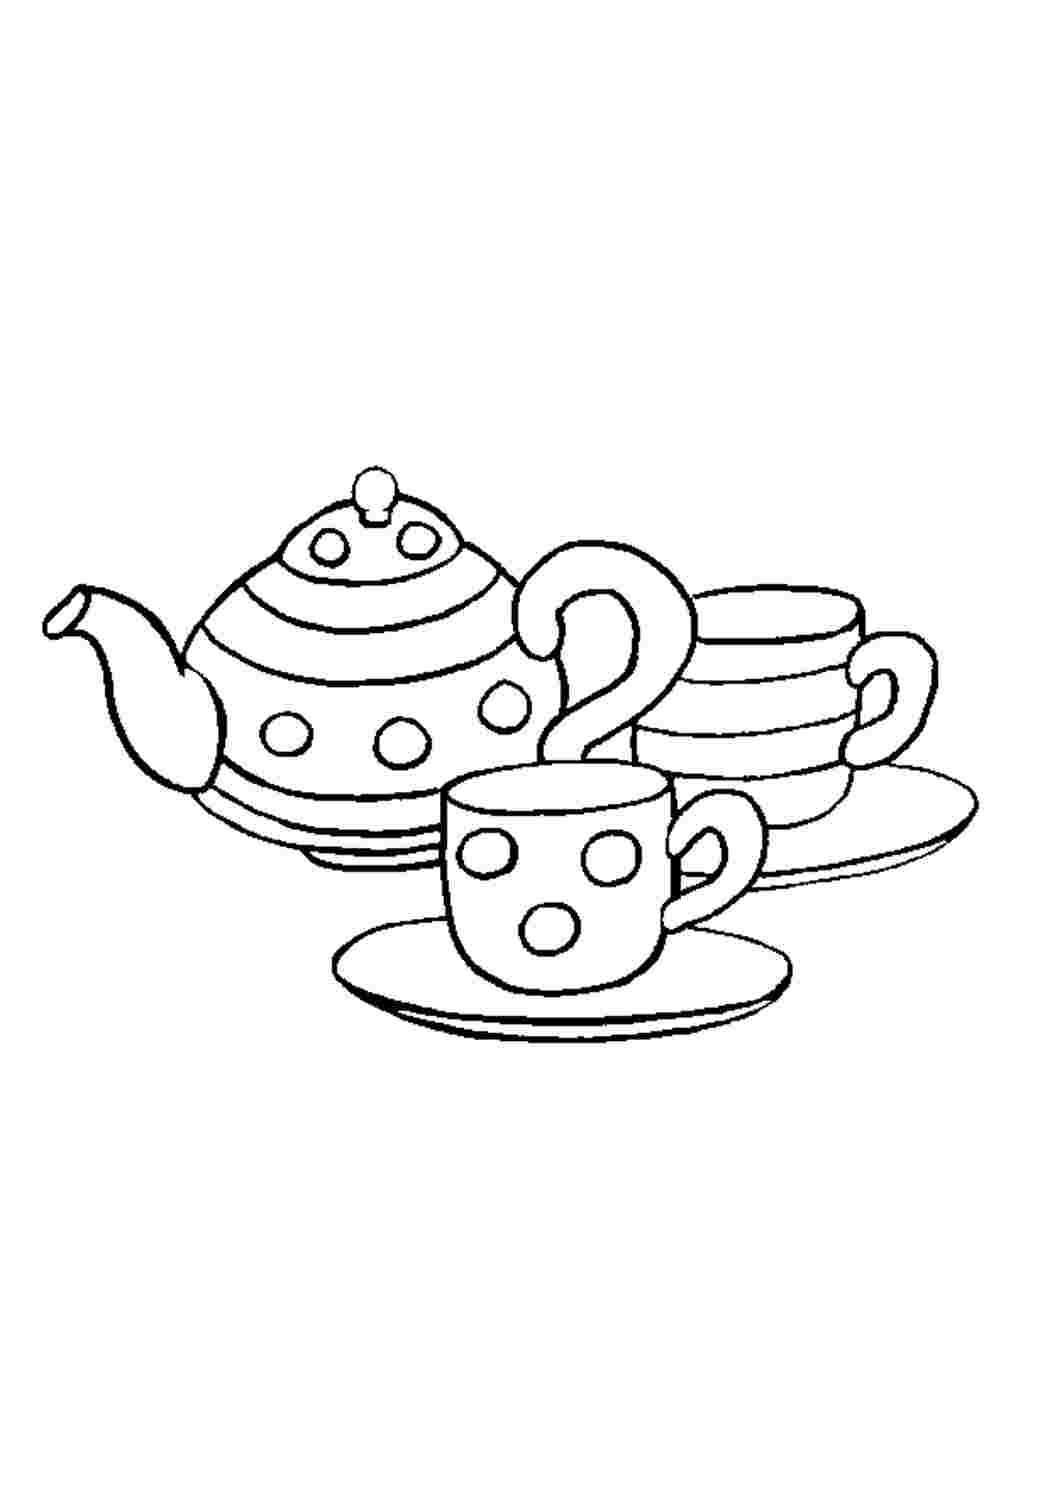 Раскраски Раскраски с изображениями посуды для девочек вилки ложки тарелки самовары чашки кружки